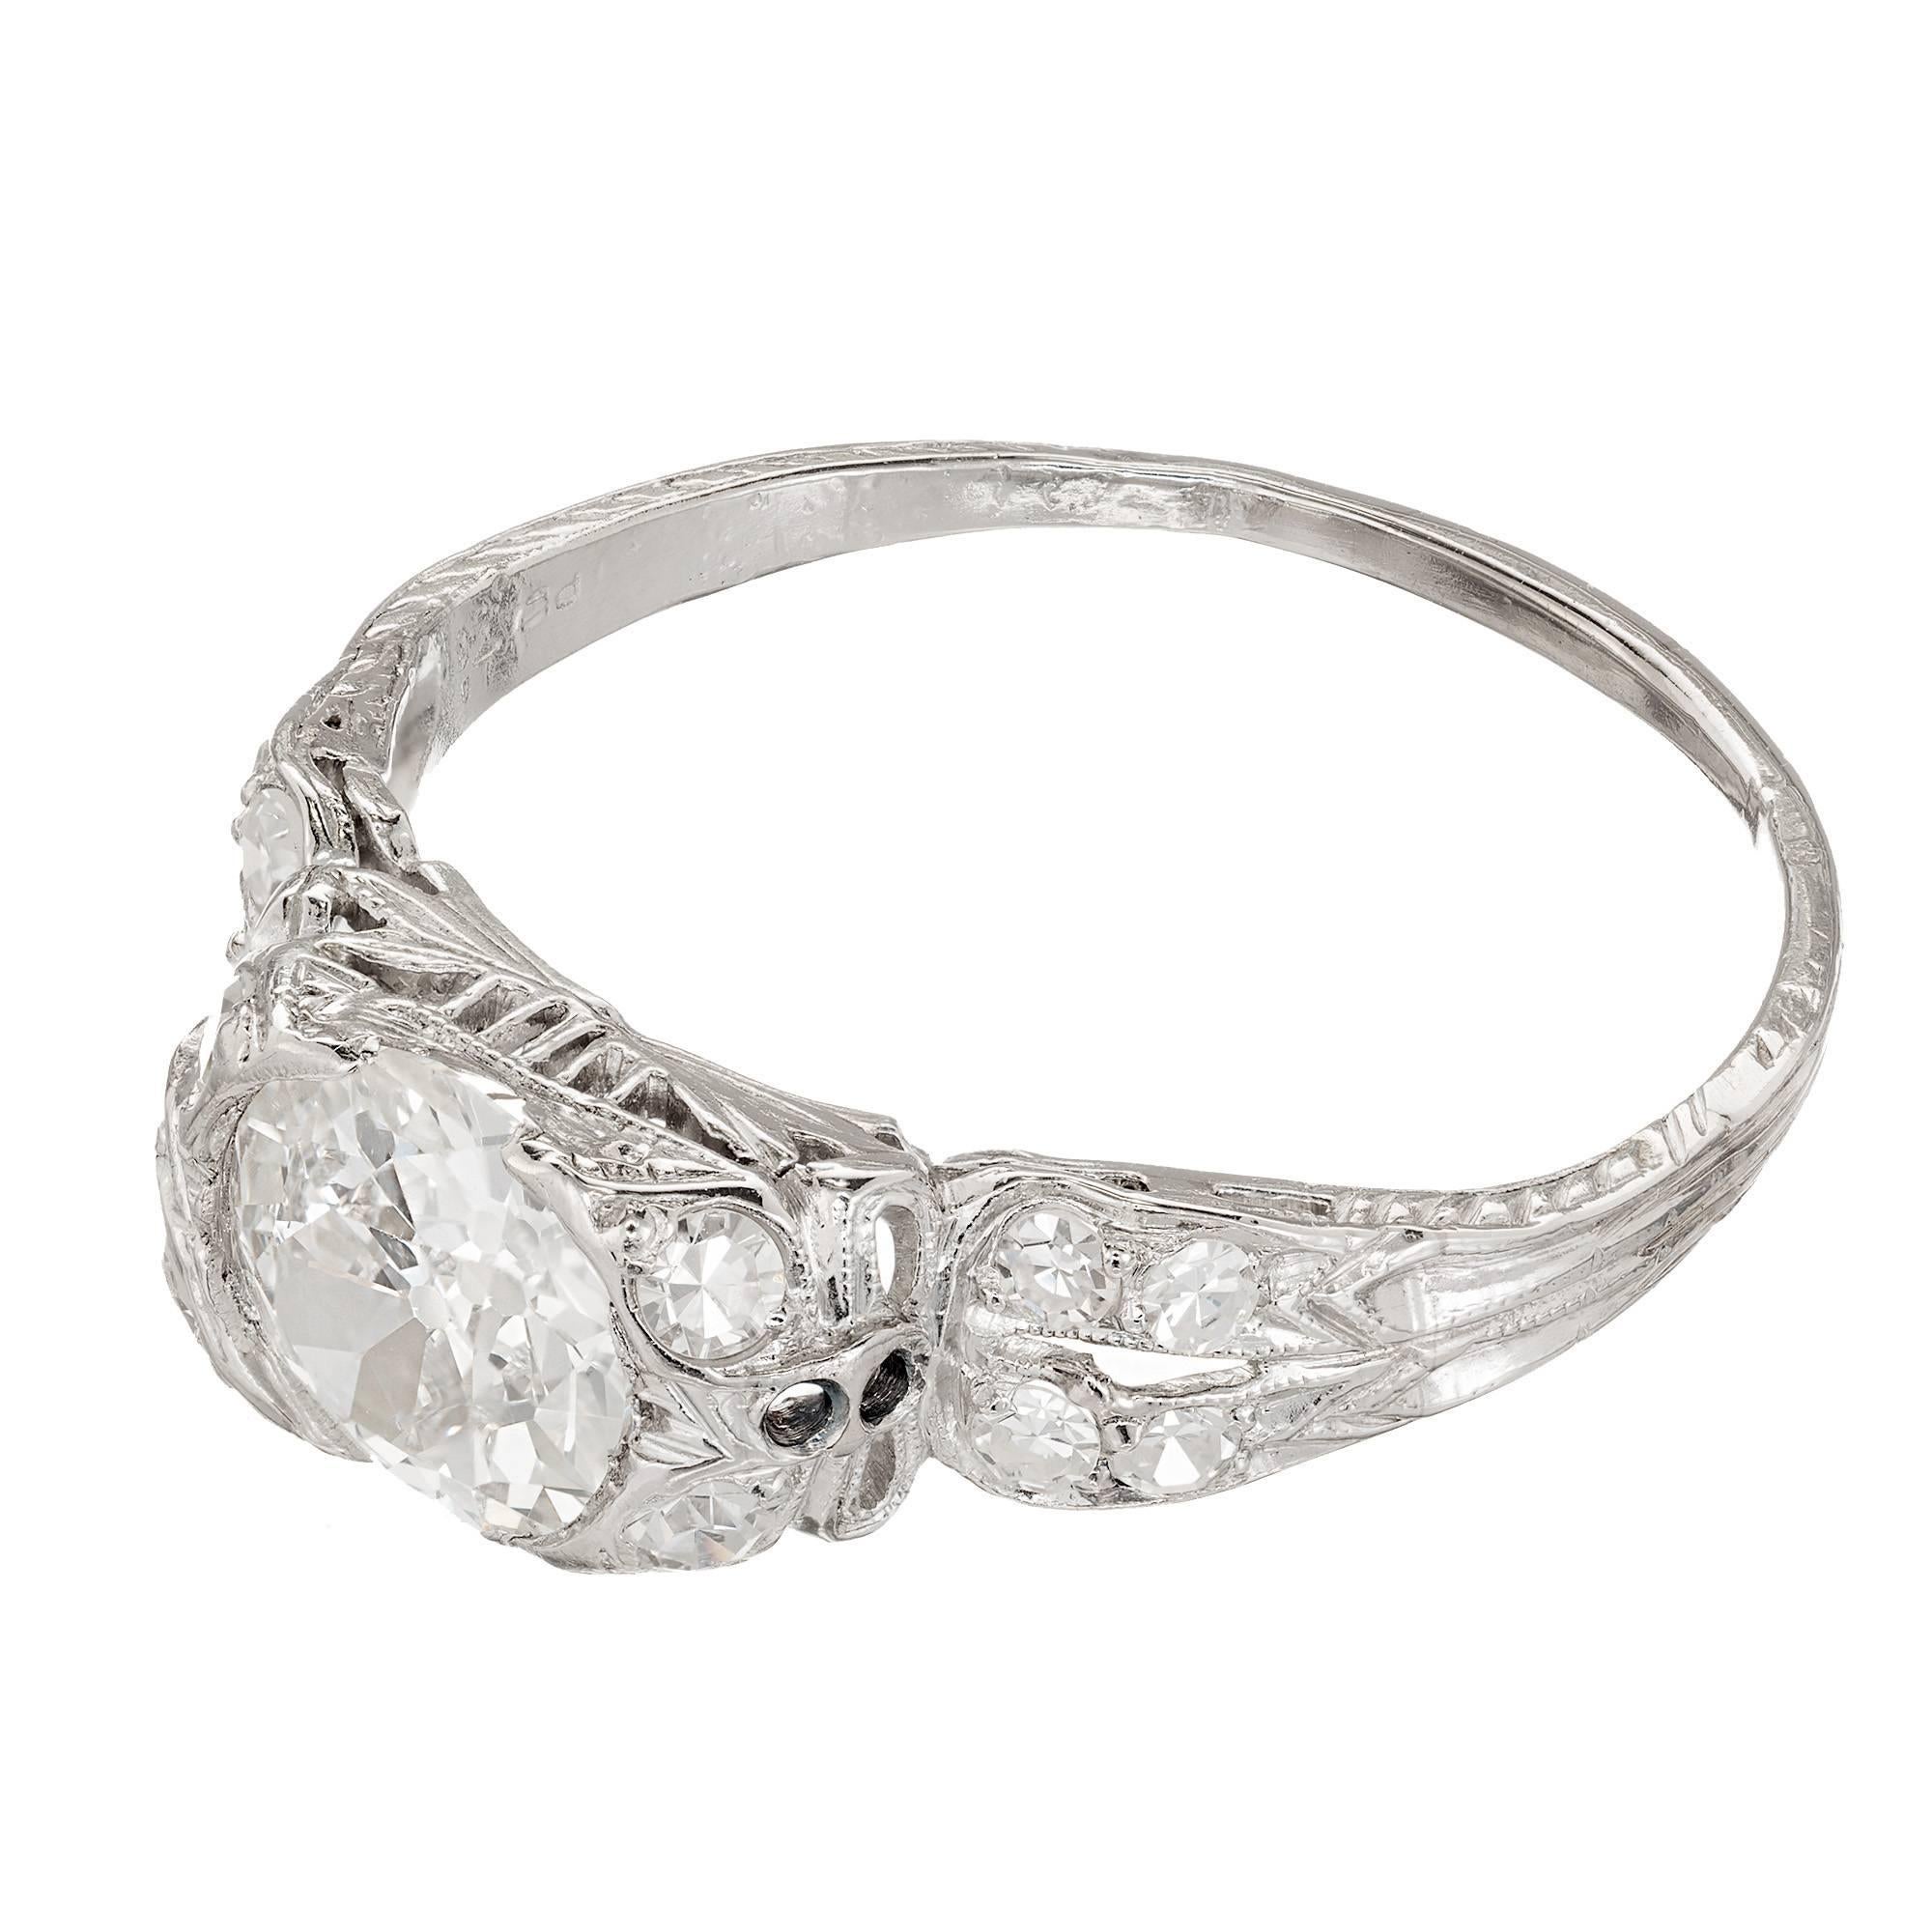 1.1 carat diamond platinum ring